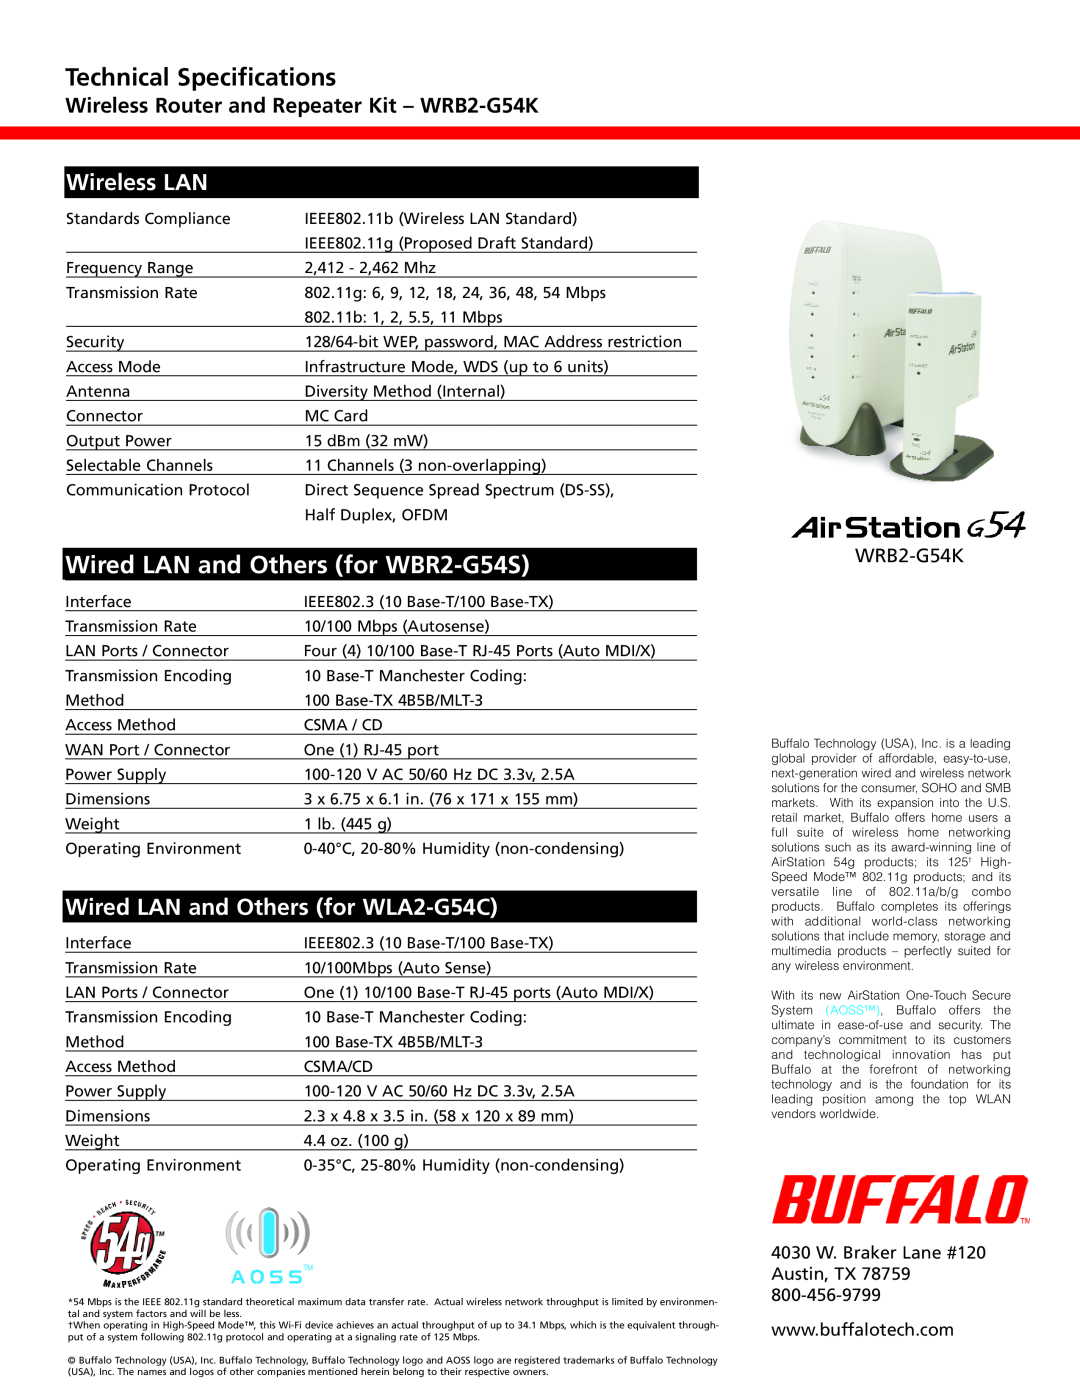 Buffalo Technology WLA2-G54C 4030 W. Braker Lane #120 Austin, TX 78759, Technical Specifications, Wireless LAN, WRB2-G54K 